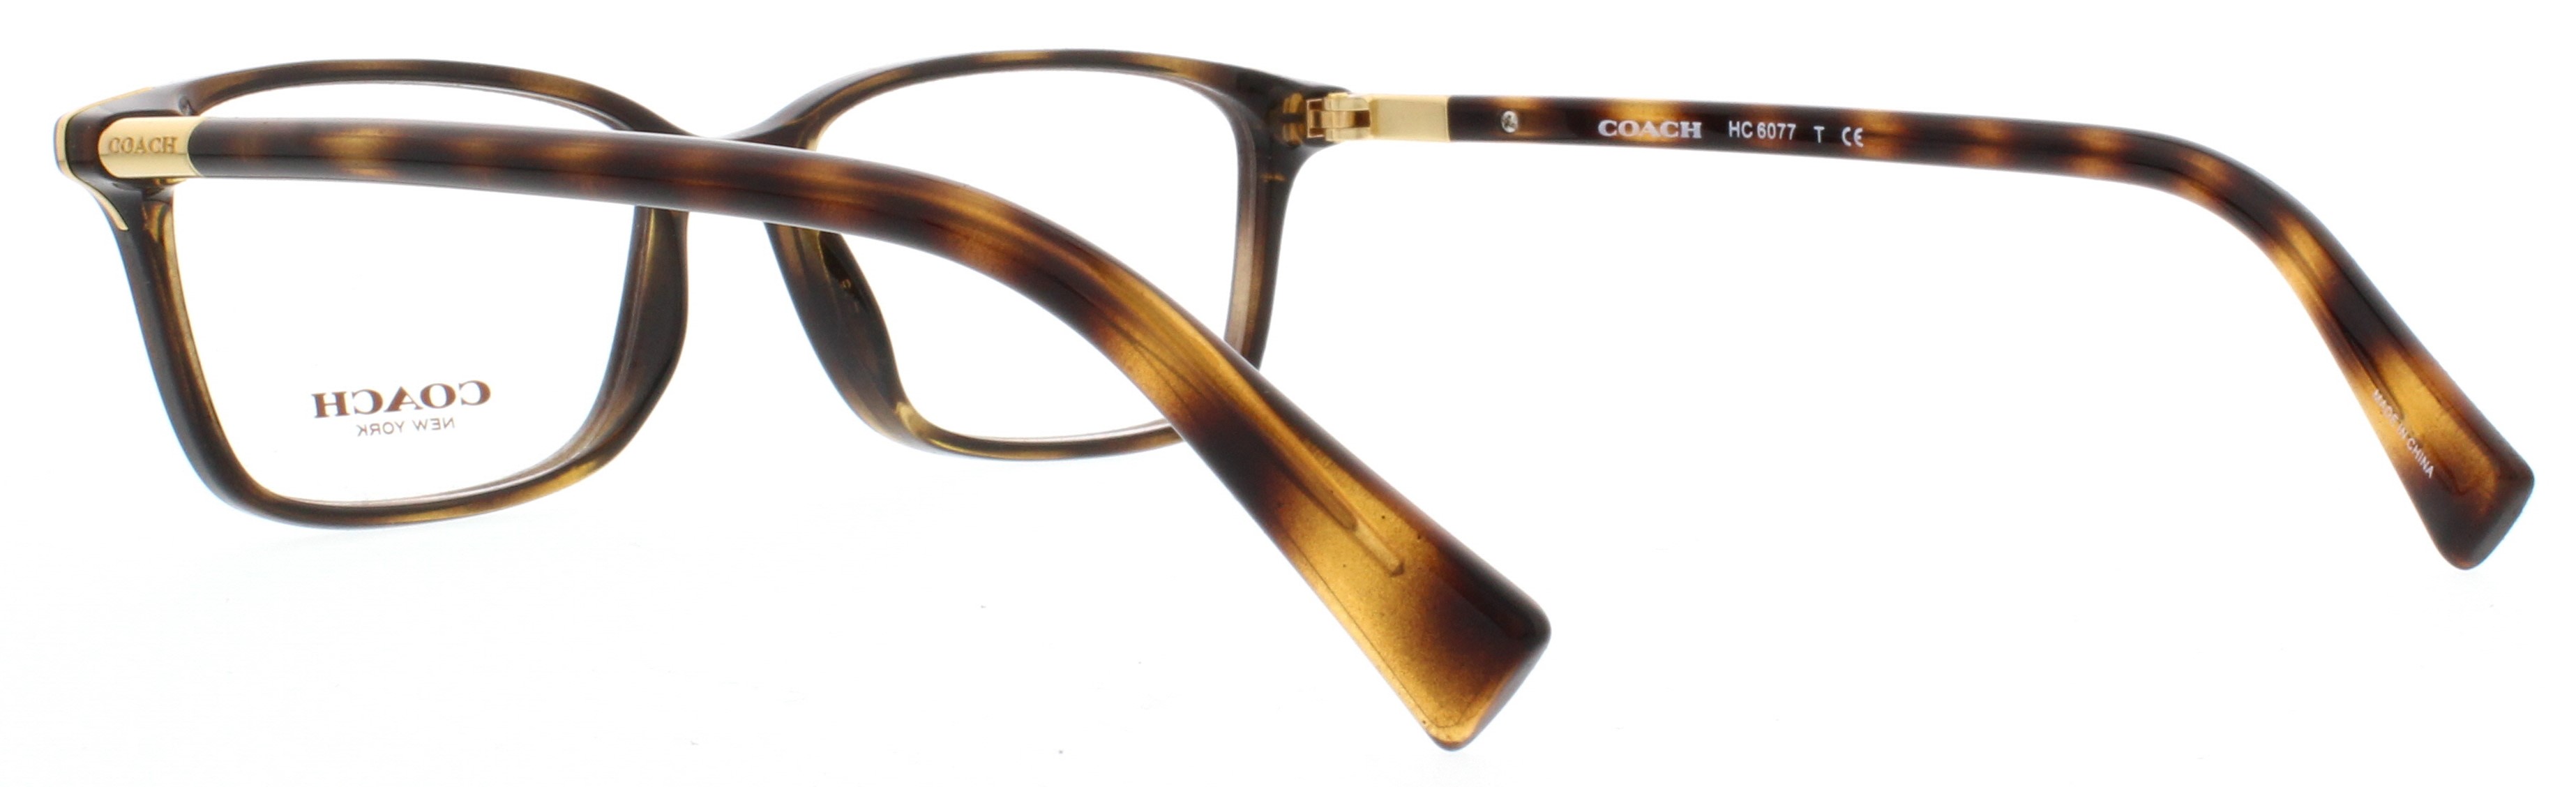 Designer Frames Outlet Coach Eyeglasses Hc6077